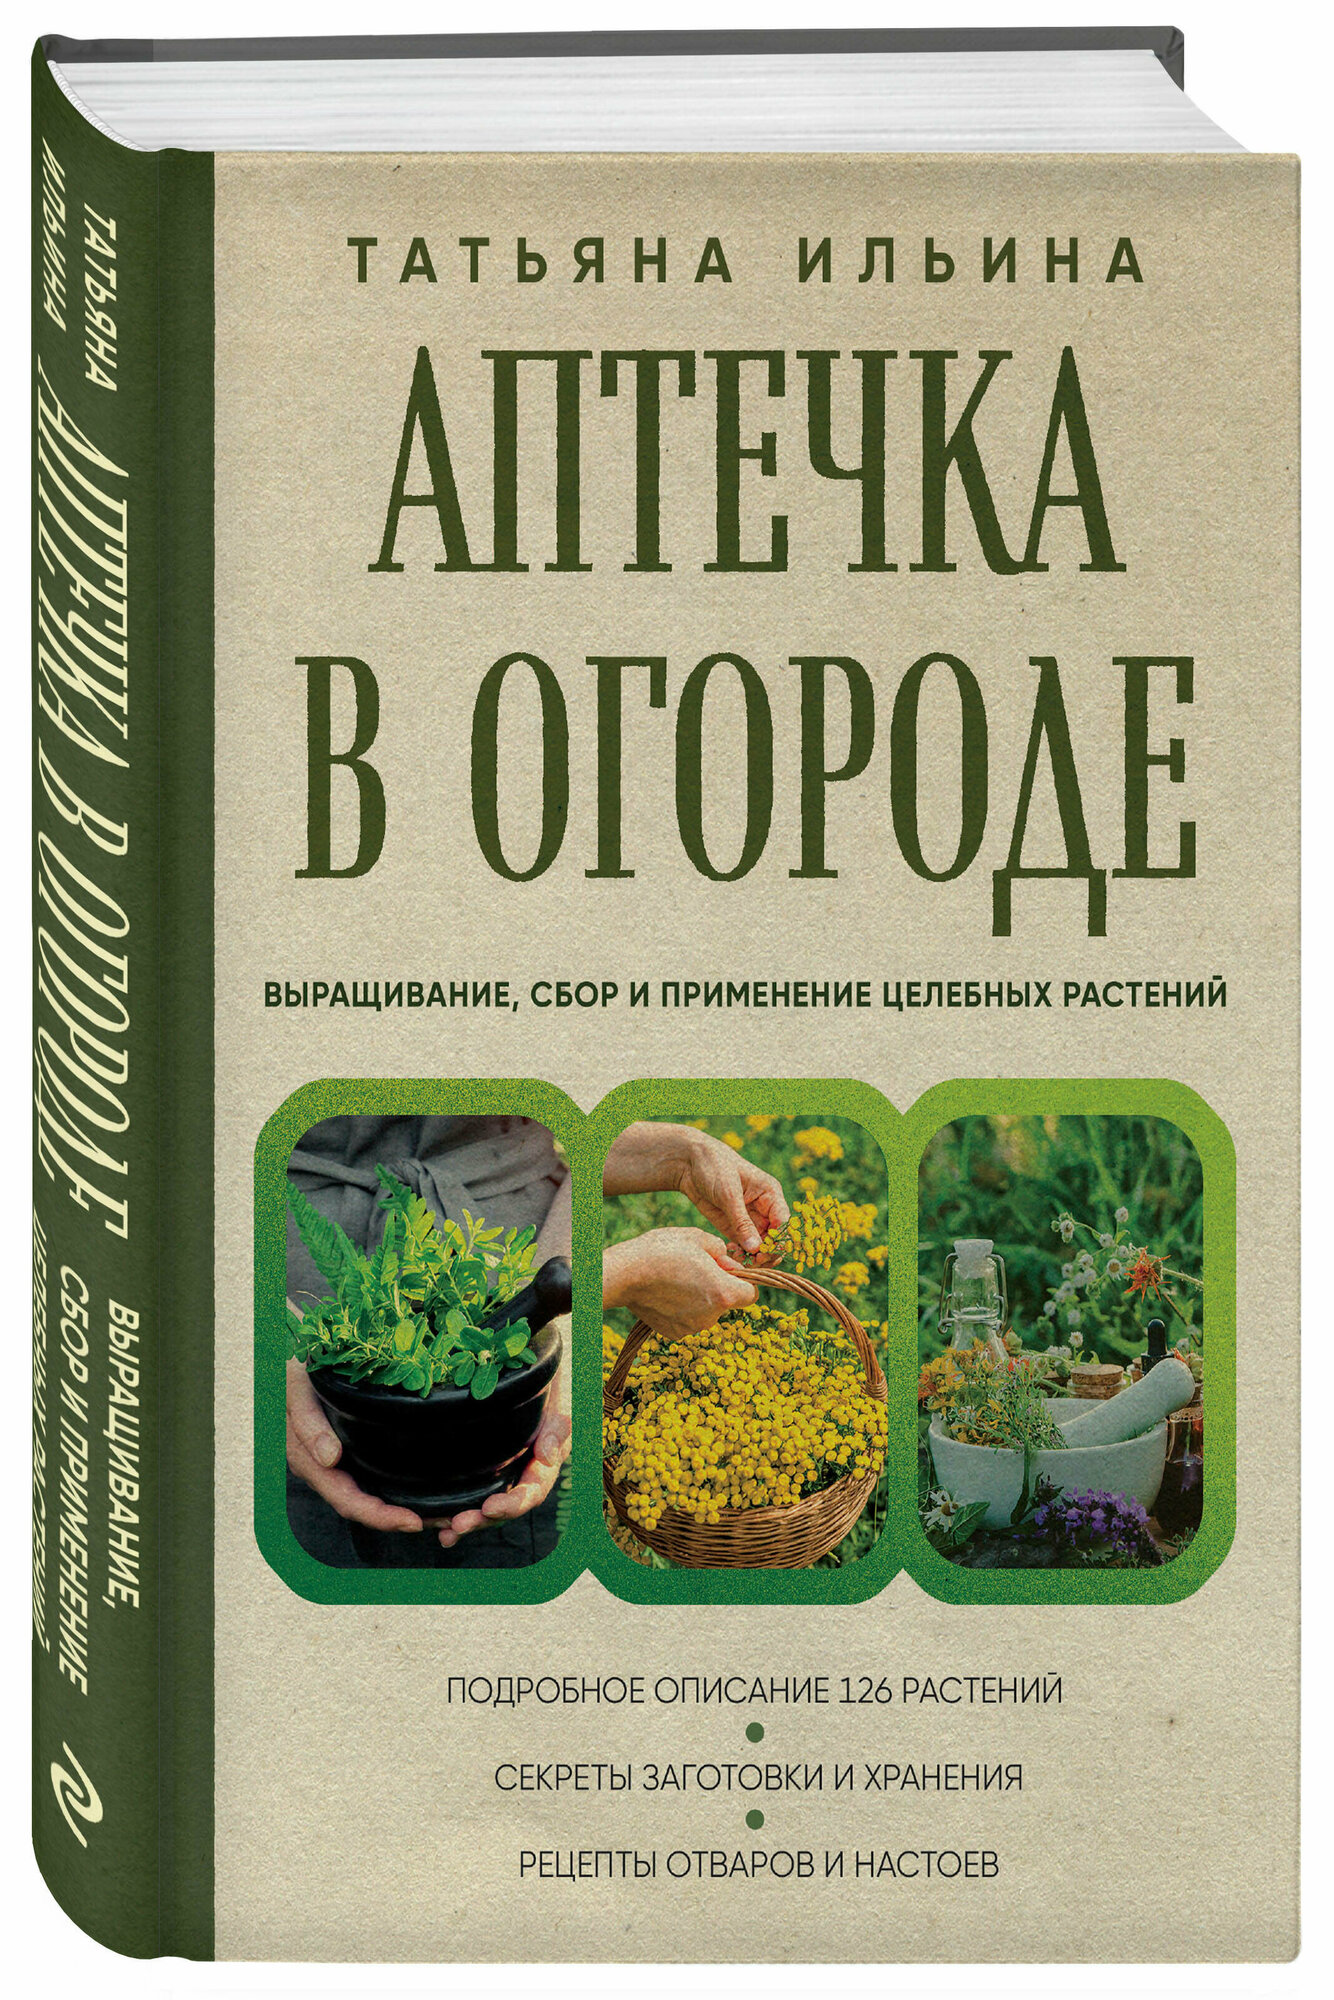 Ильина Т. А. Аптечка в огороде. Выращивание, сбор и применение целебных растений